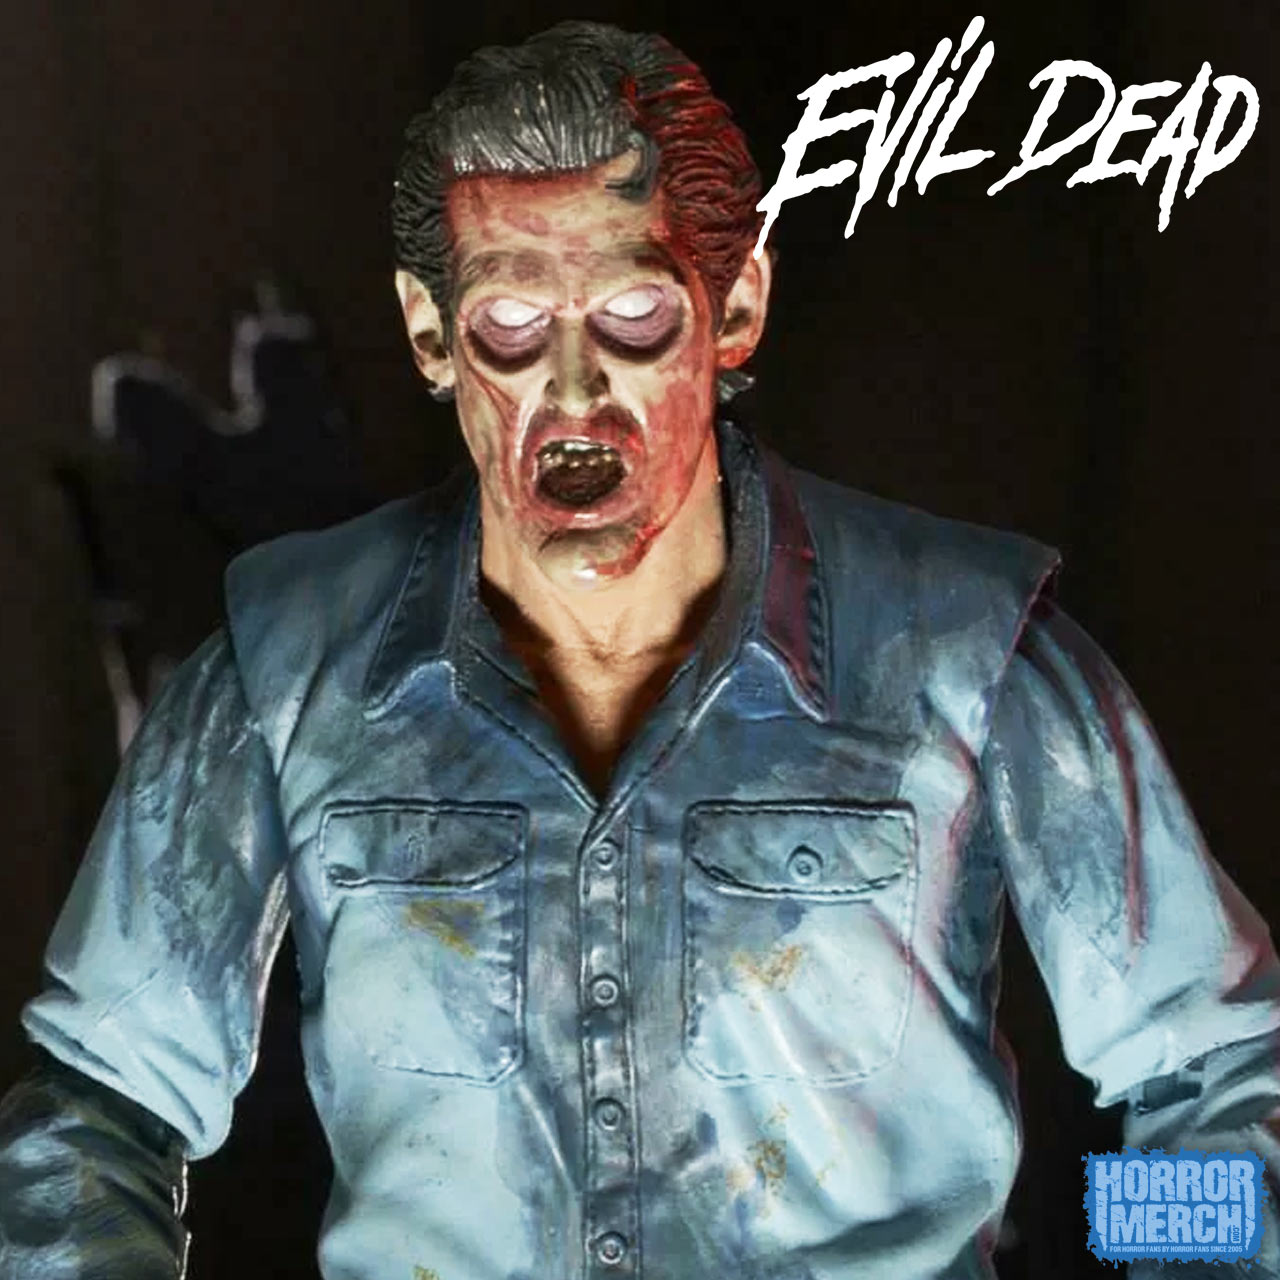 Evil Dead 2 - Ultimate Ash [Figure]